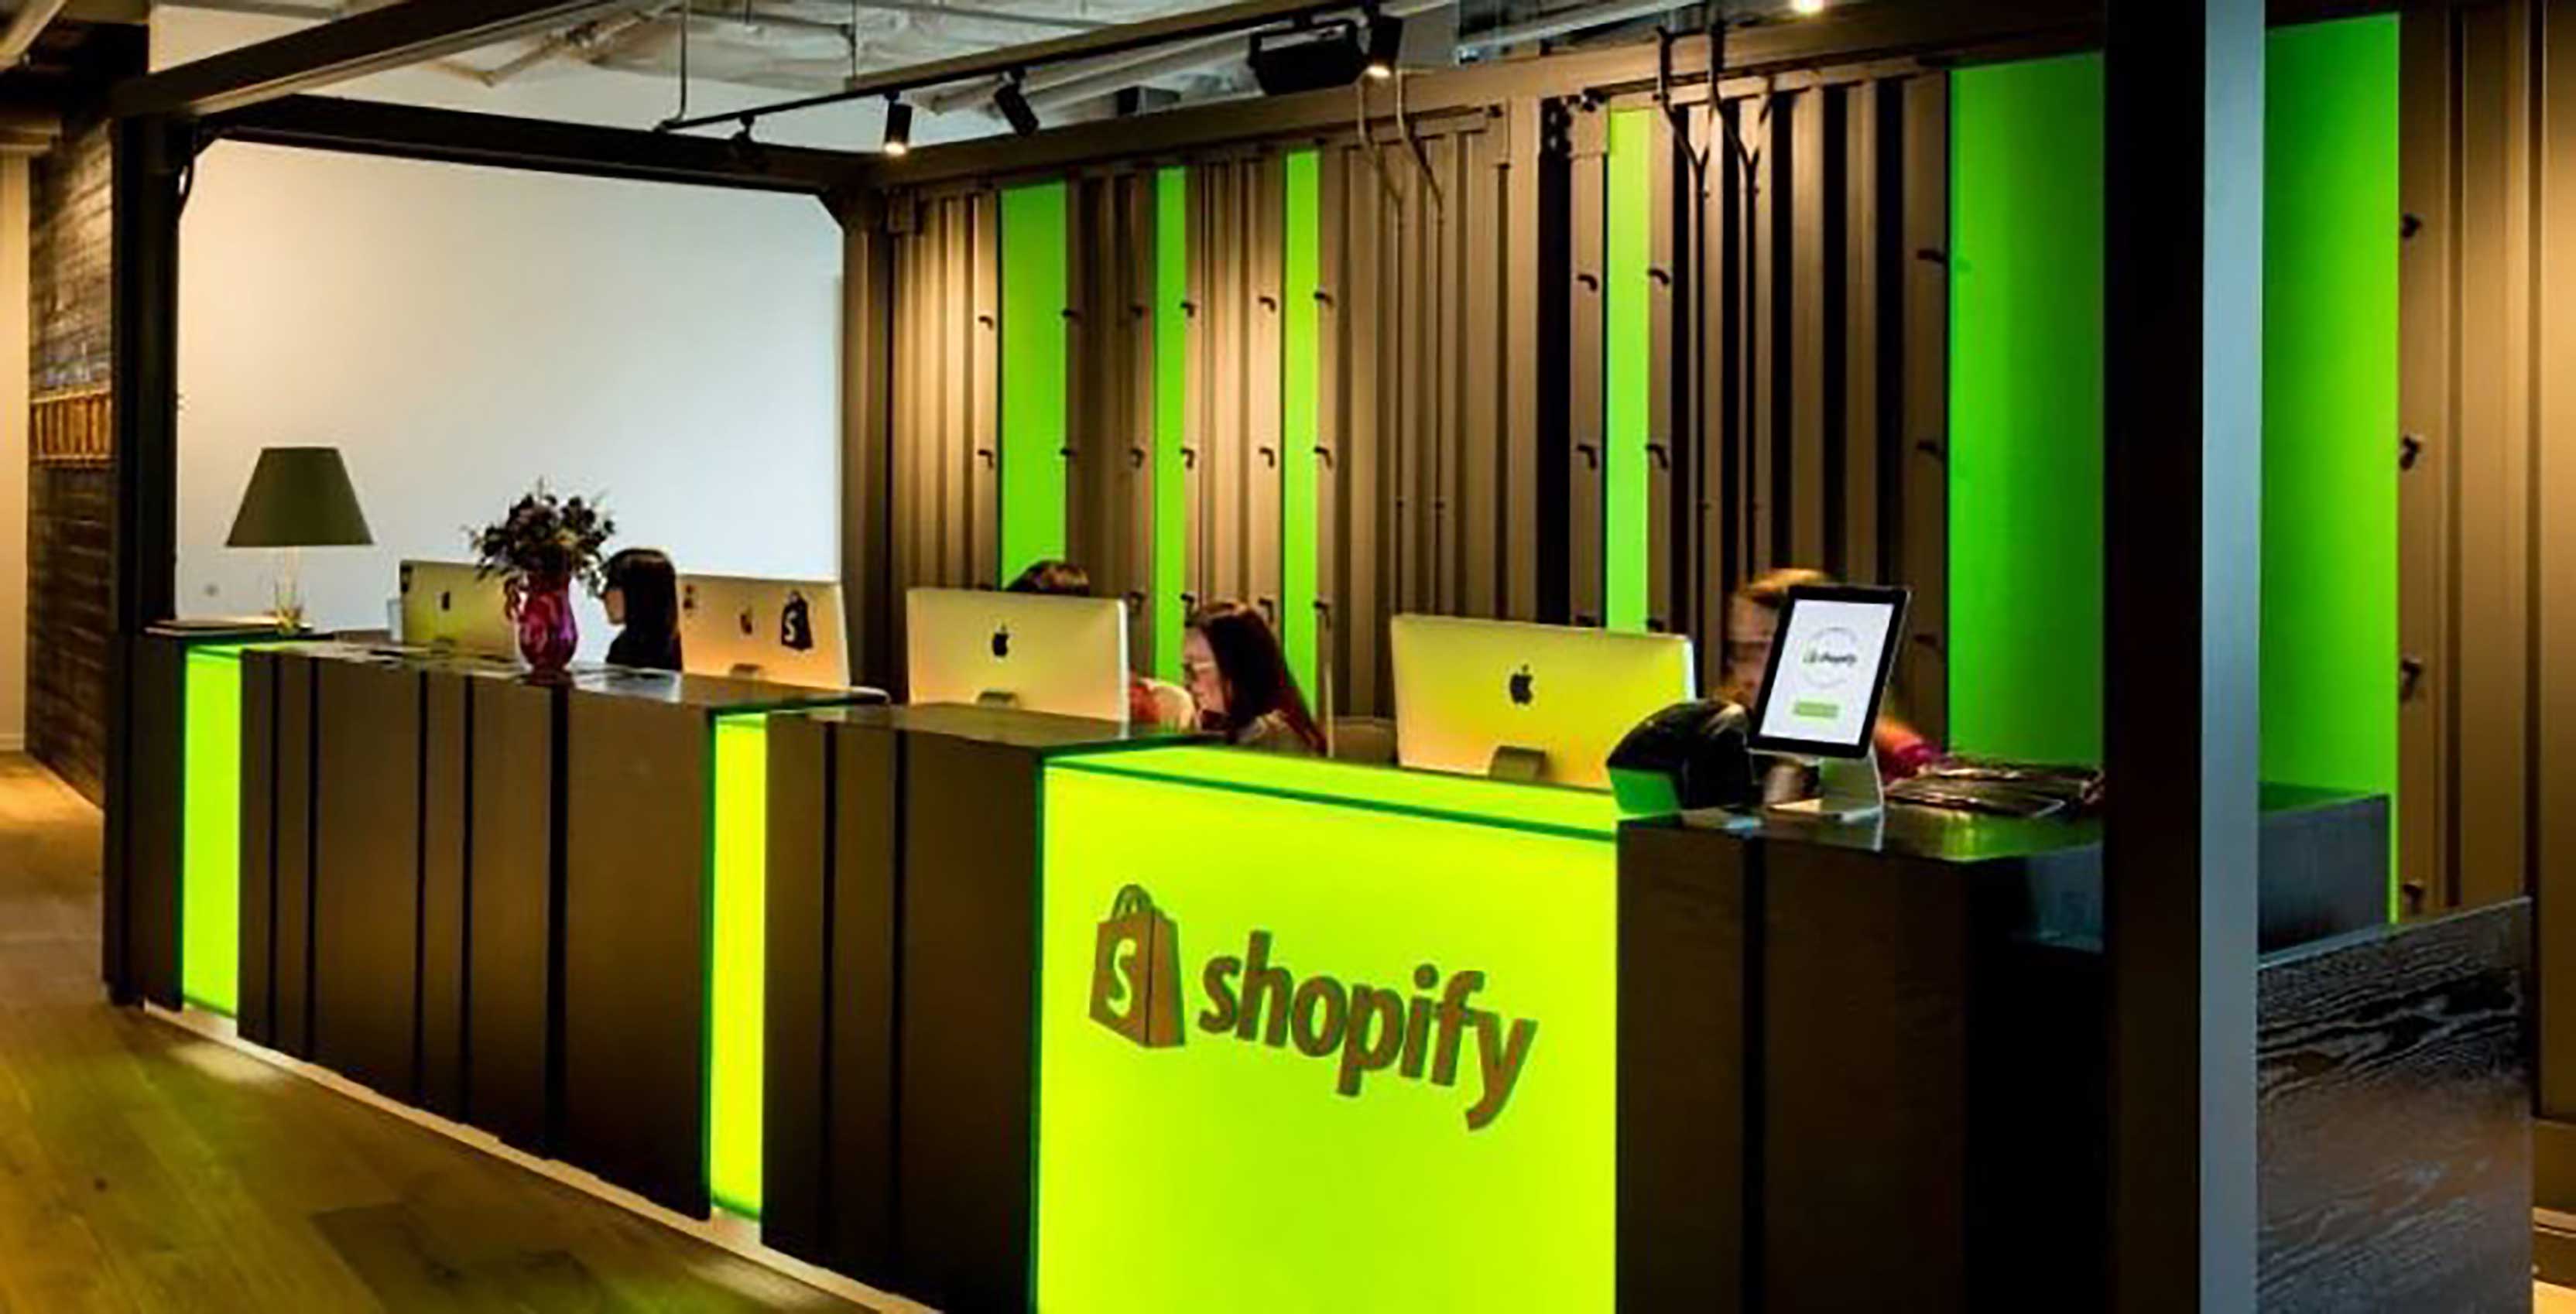 Shopify desk in office